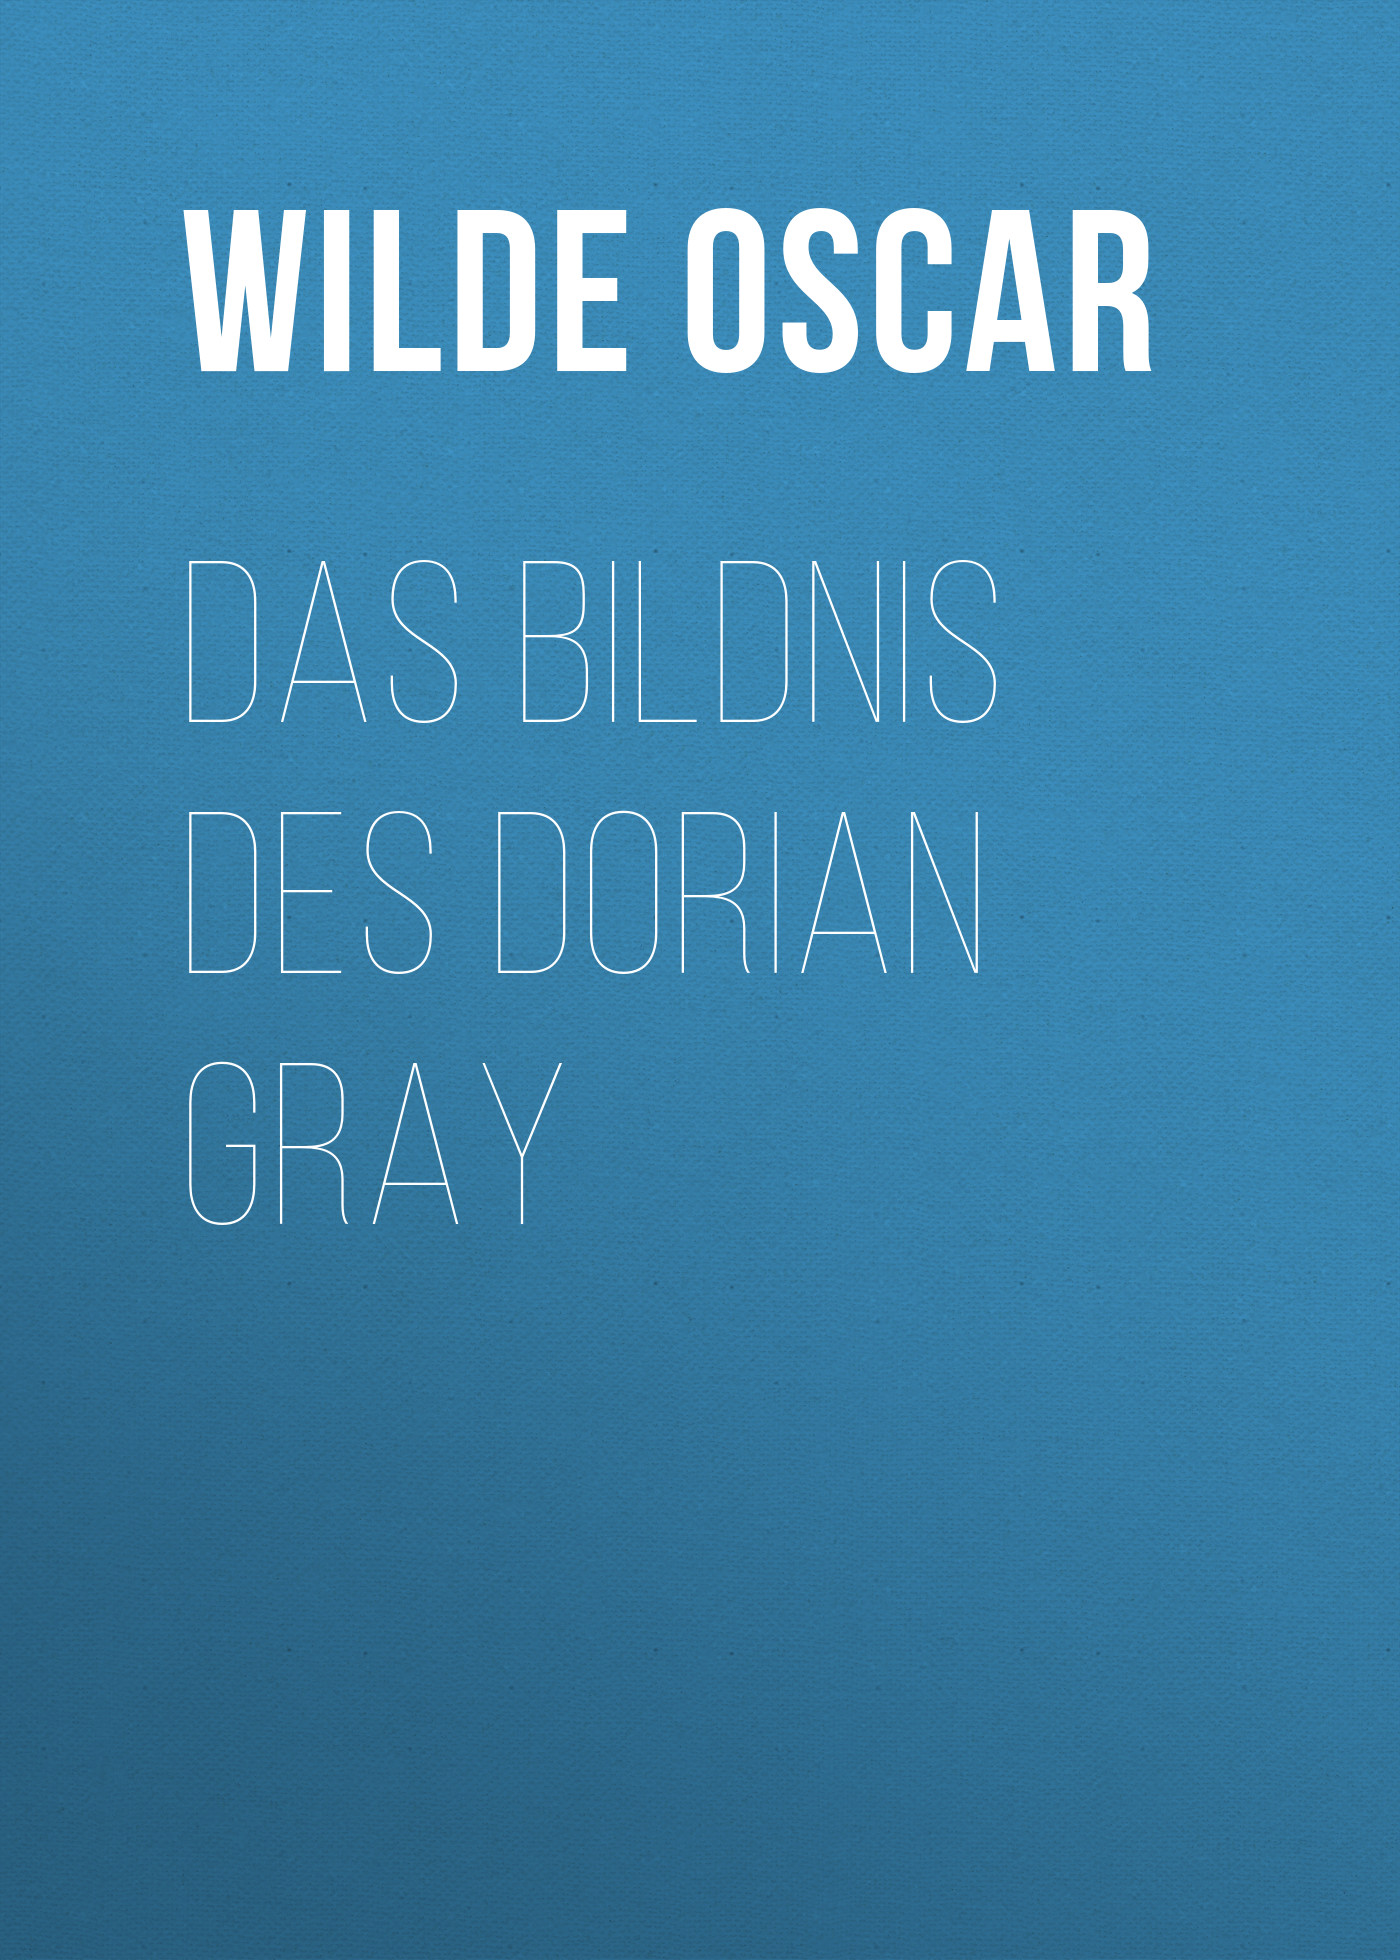 Книга Das Bildnis des Dorian Gray из серии , созданная Oscar Wilde, может относится к жанру Литература 19 века, Зарубежная классика, Зарубежная фантастика. Стоимость электронной книги Das Bildnis des Dorian Gray с идентификатором 25559012 составляет 0 руб.